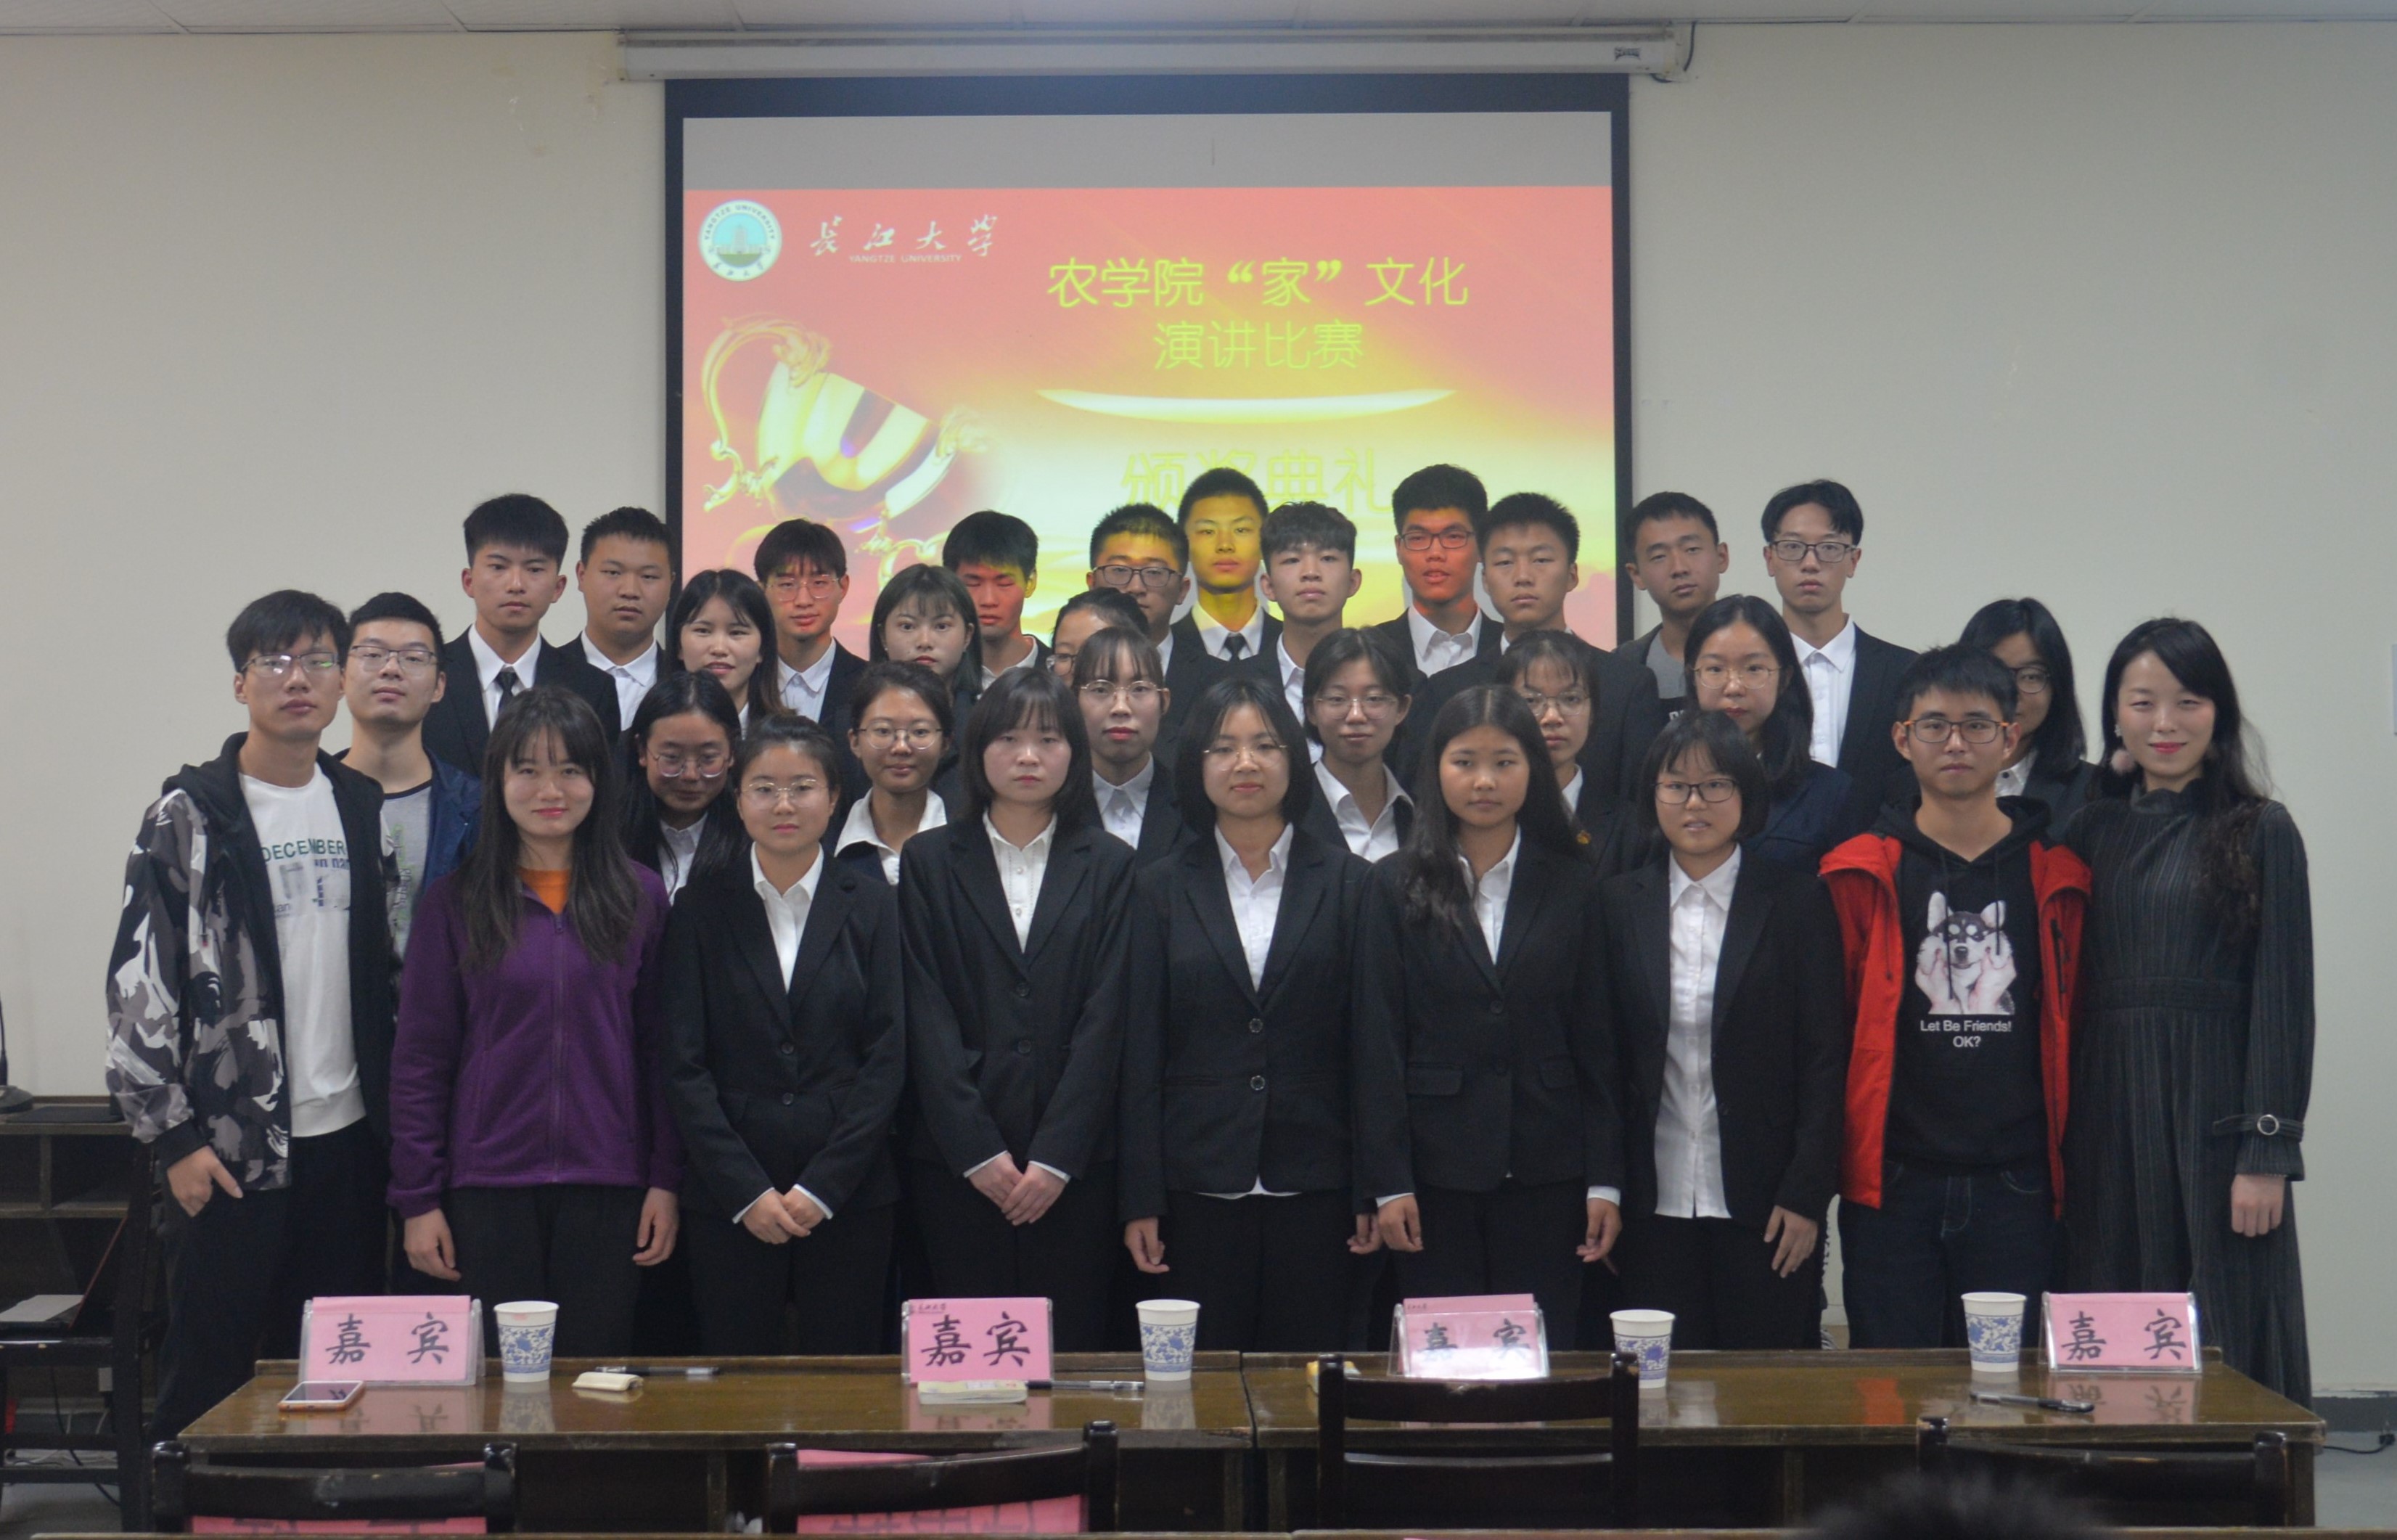 我院举行家文化演讲比赛-长江大学农学院